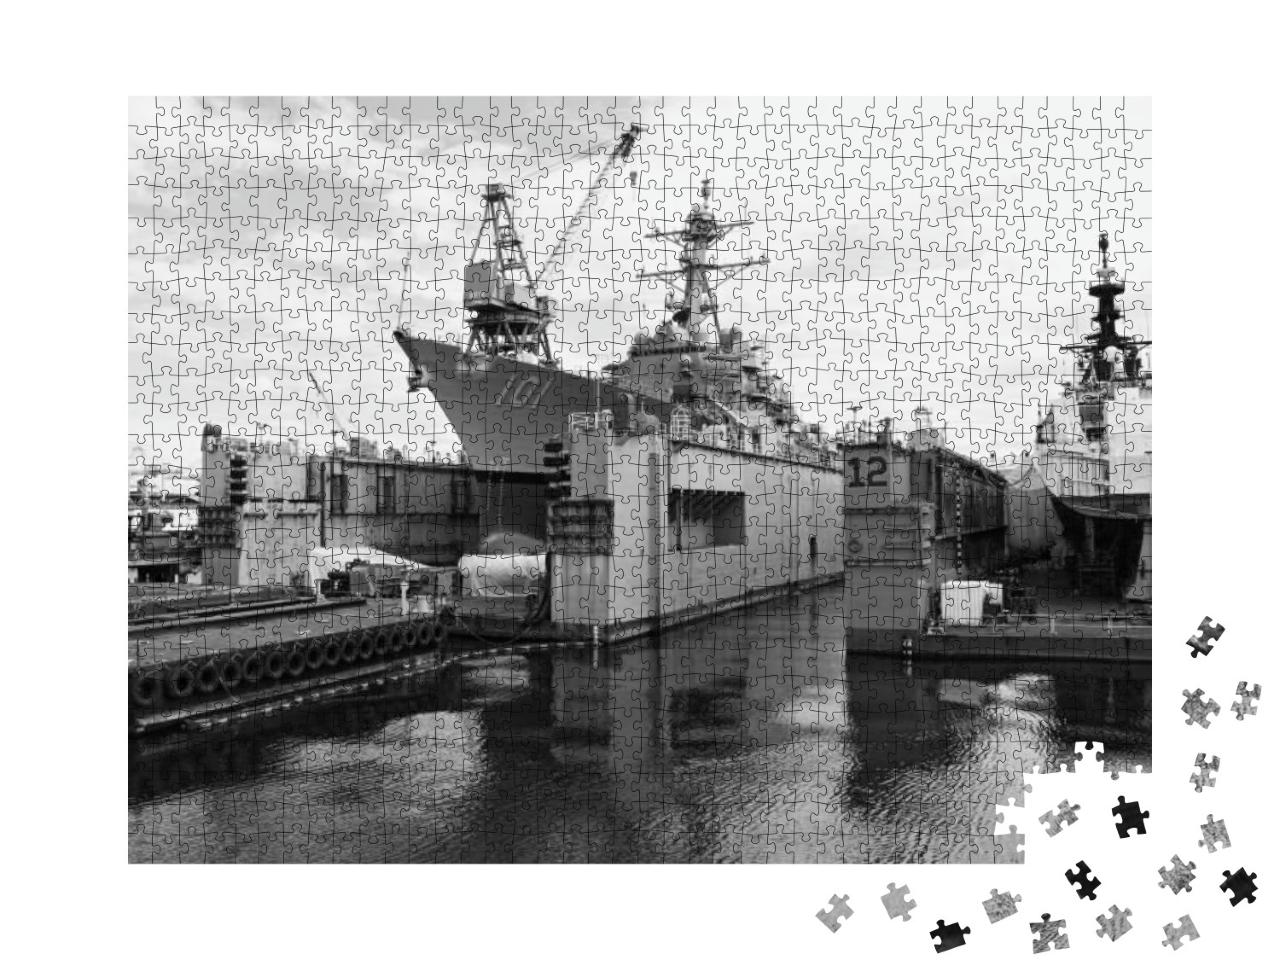 Puzzle 1000 Teile „Flugzeugträger im Hafen von Seattle, schwarz-weiß“